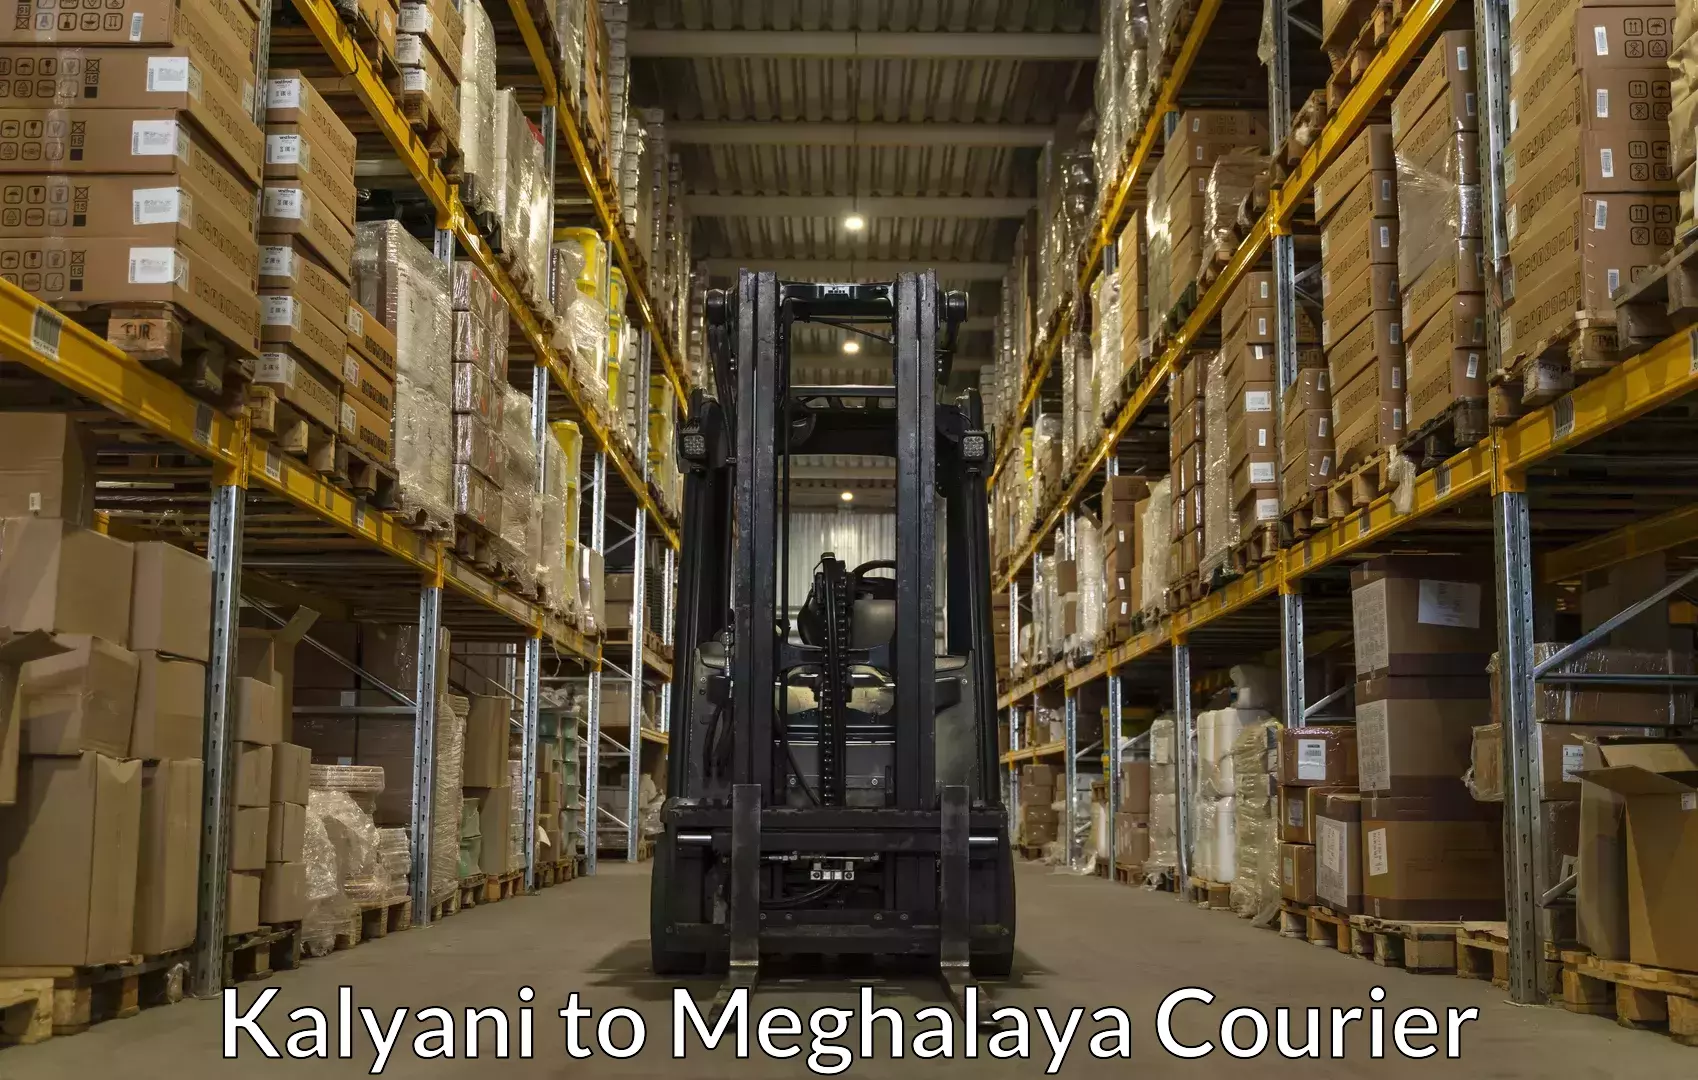 Luggage transport consultancy Kalyani to Meghalaya